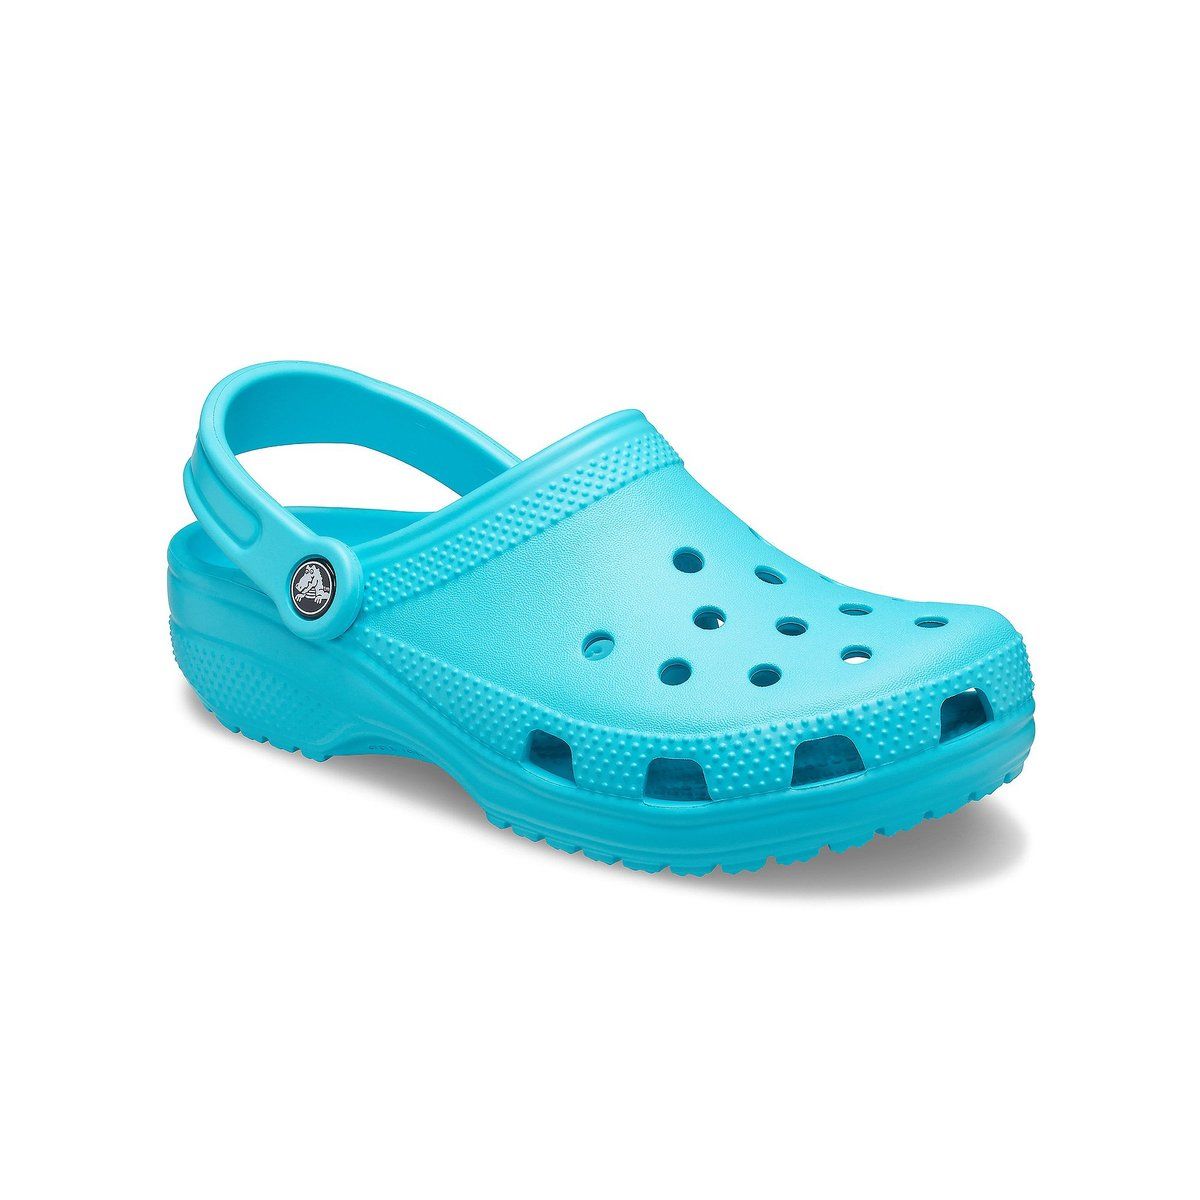  Crocs  Classic 10001 4SL Aqua  shoes